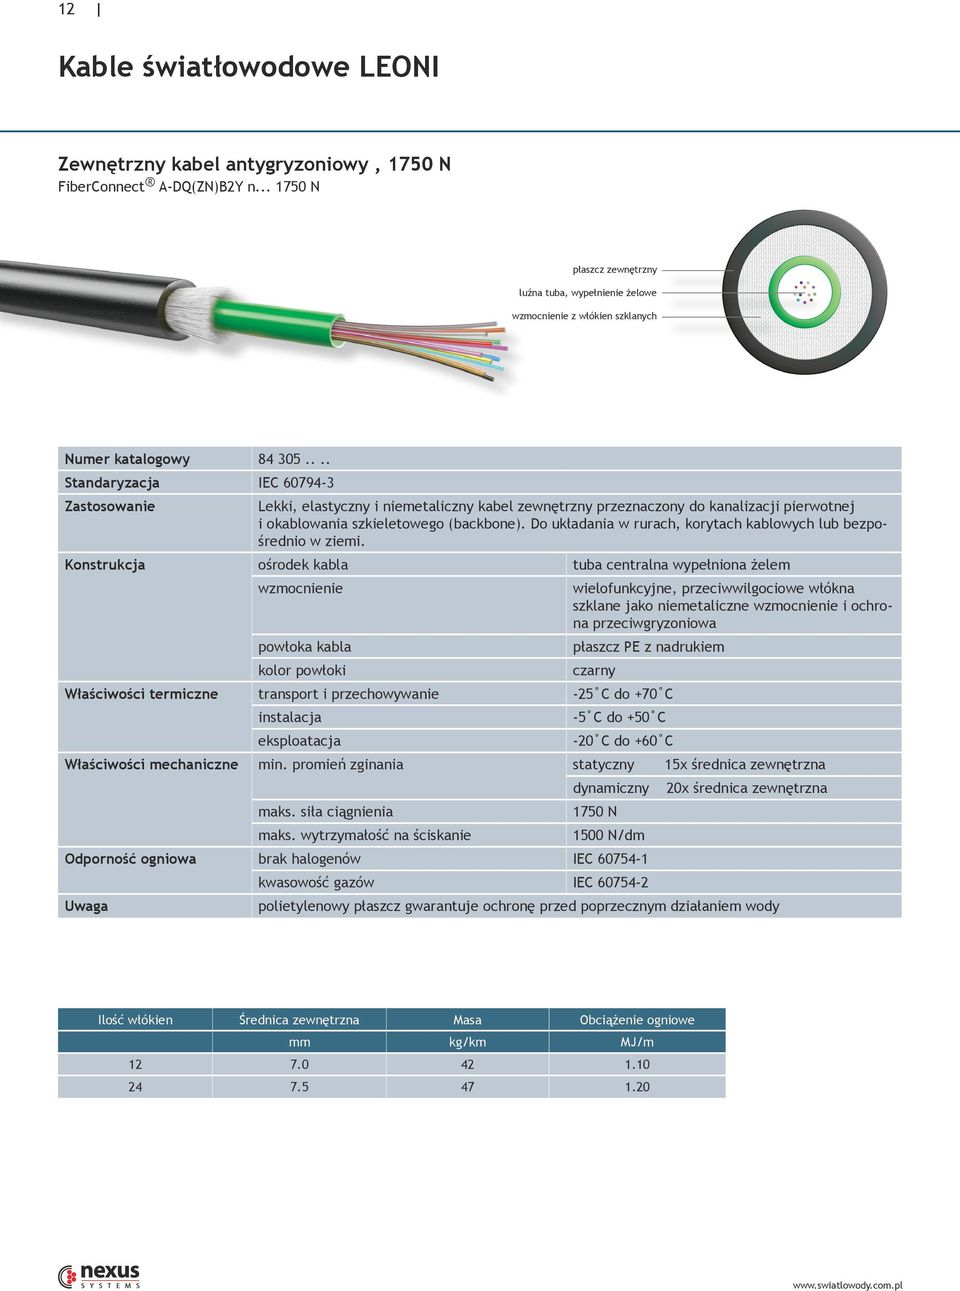 ... Standaryzacja IEC 60794-3 Zastosowanie Lekki, elastyczny i niemetaliczny kabel zewnętrzny przeznaczony do kanalizacji pierwotnej i okablowania szkieletowego (backbone).